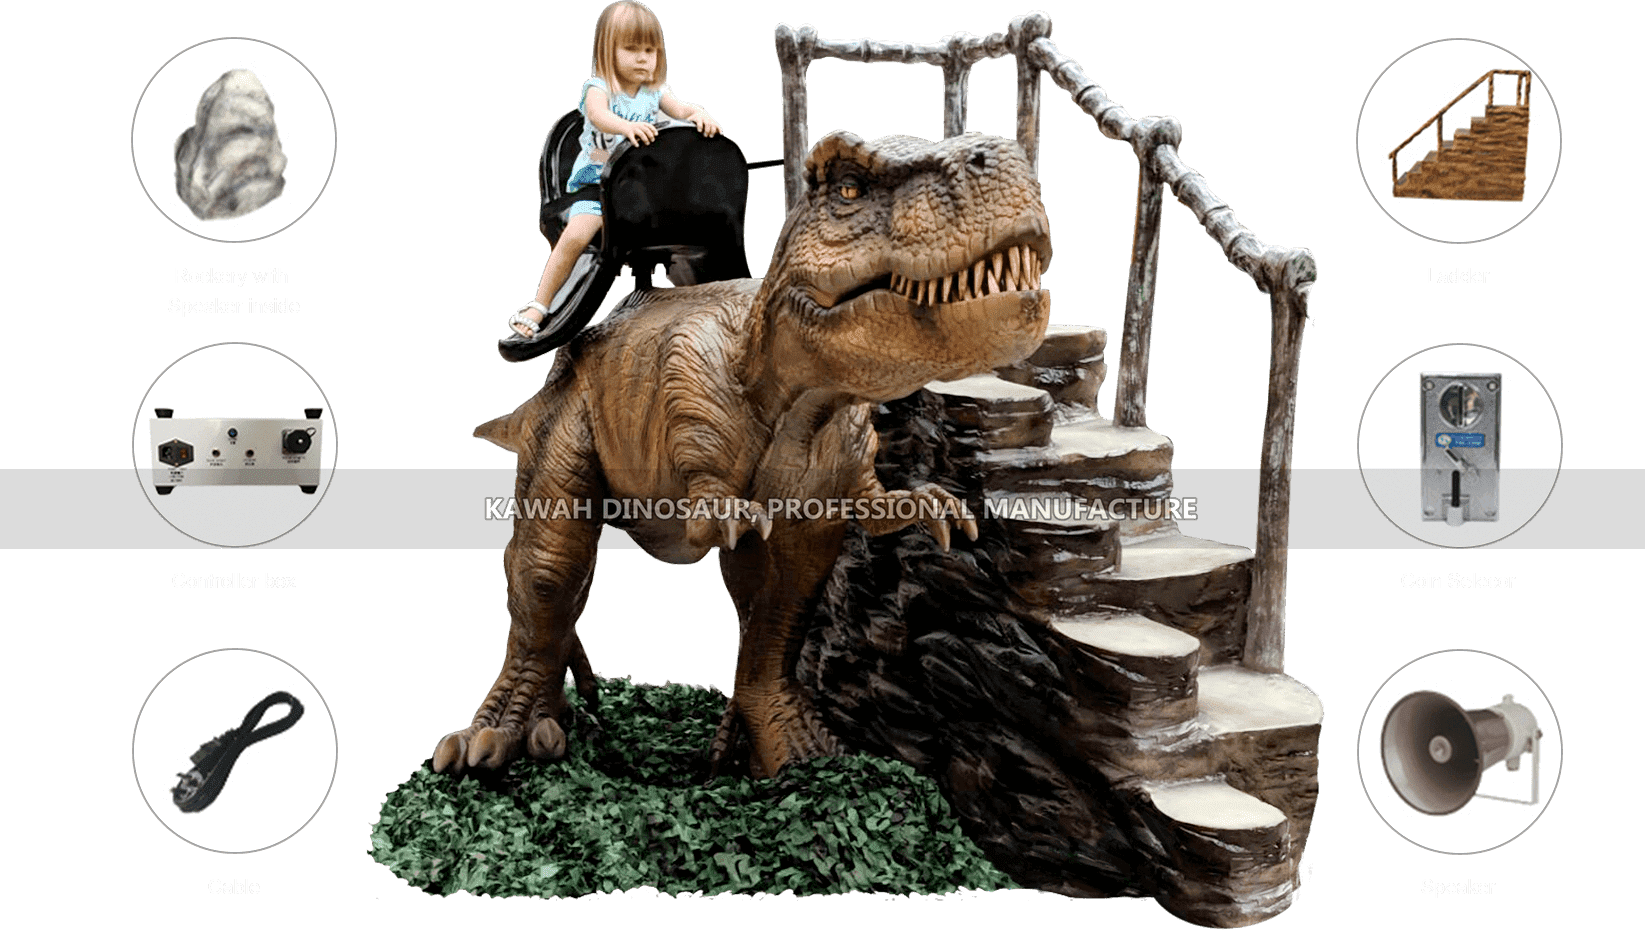 Accesorios principales de Animatronic Dinosaur Ride